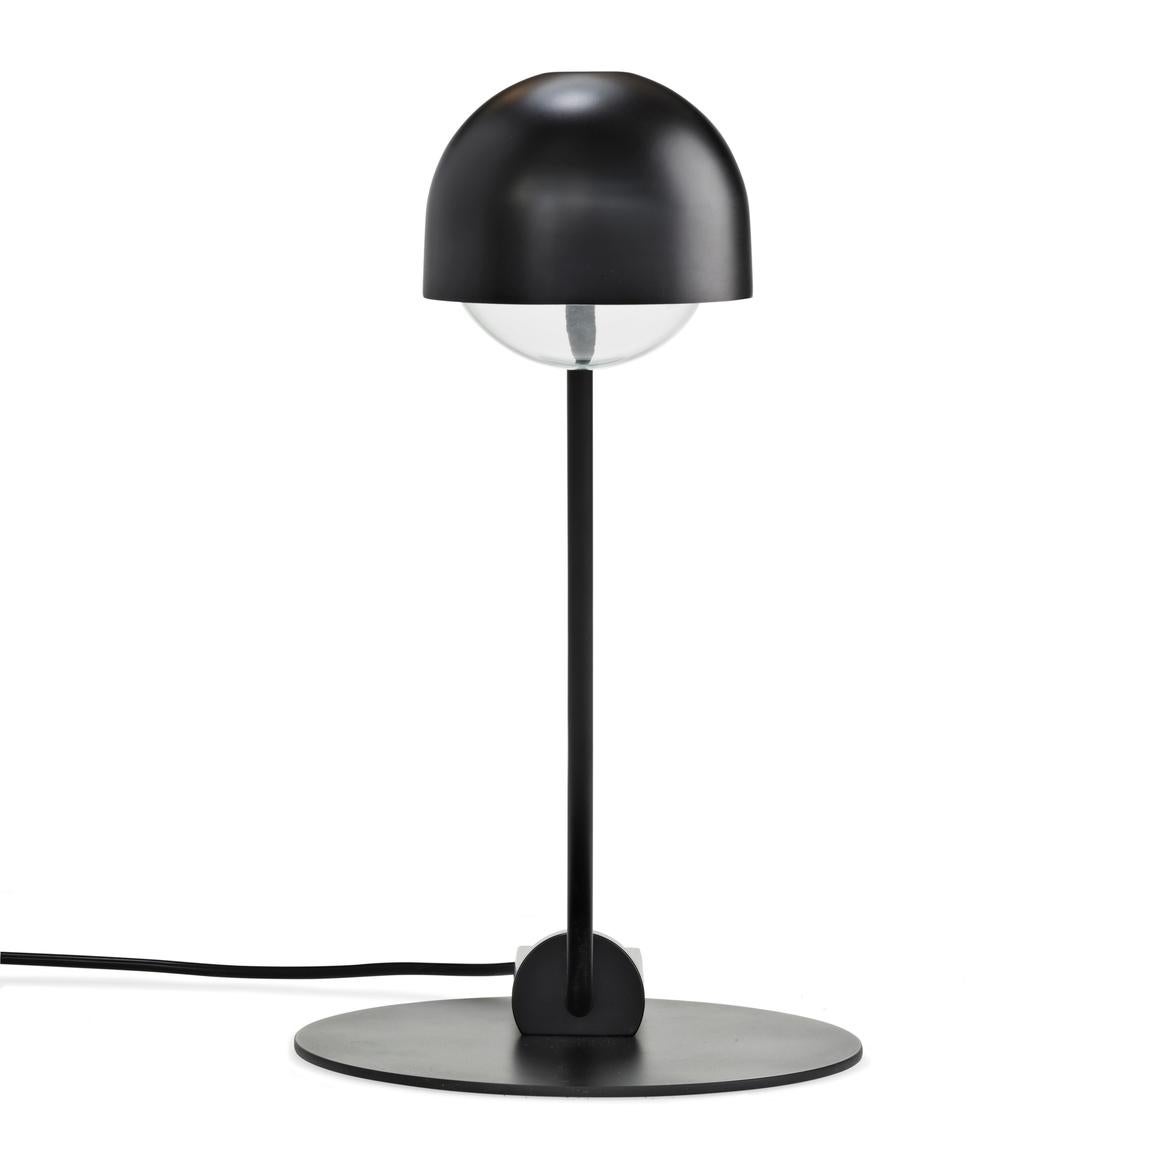 Danish Joe Colombo 'Domo' Steel Table Lamp by Karakter